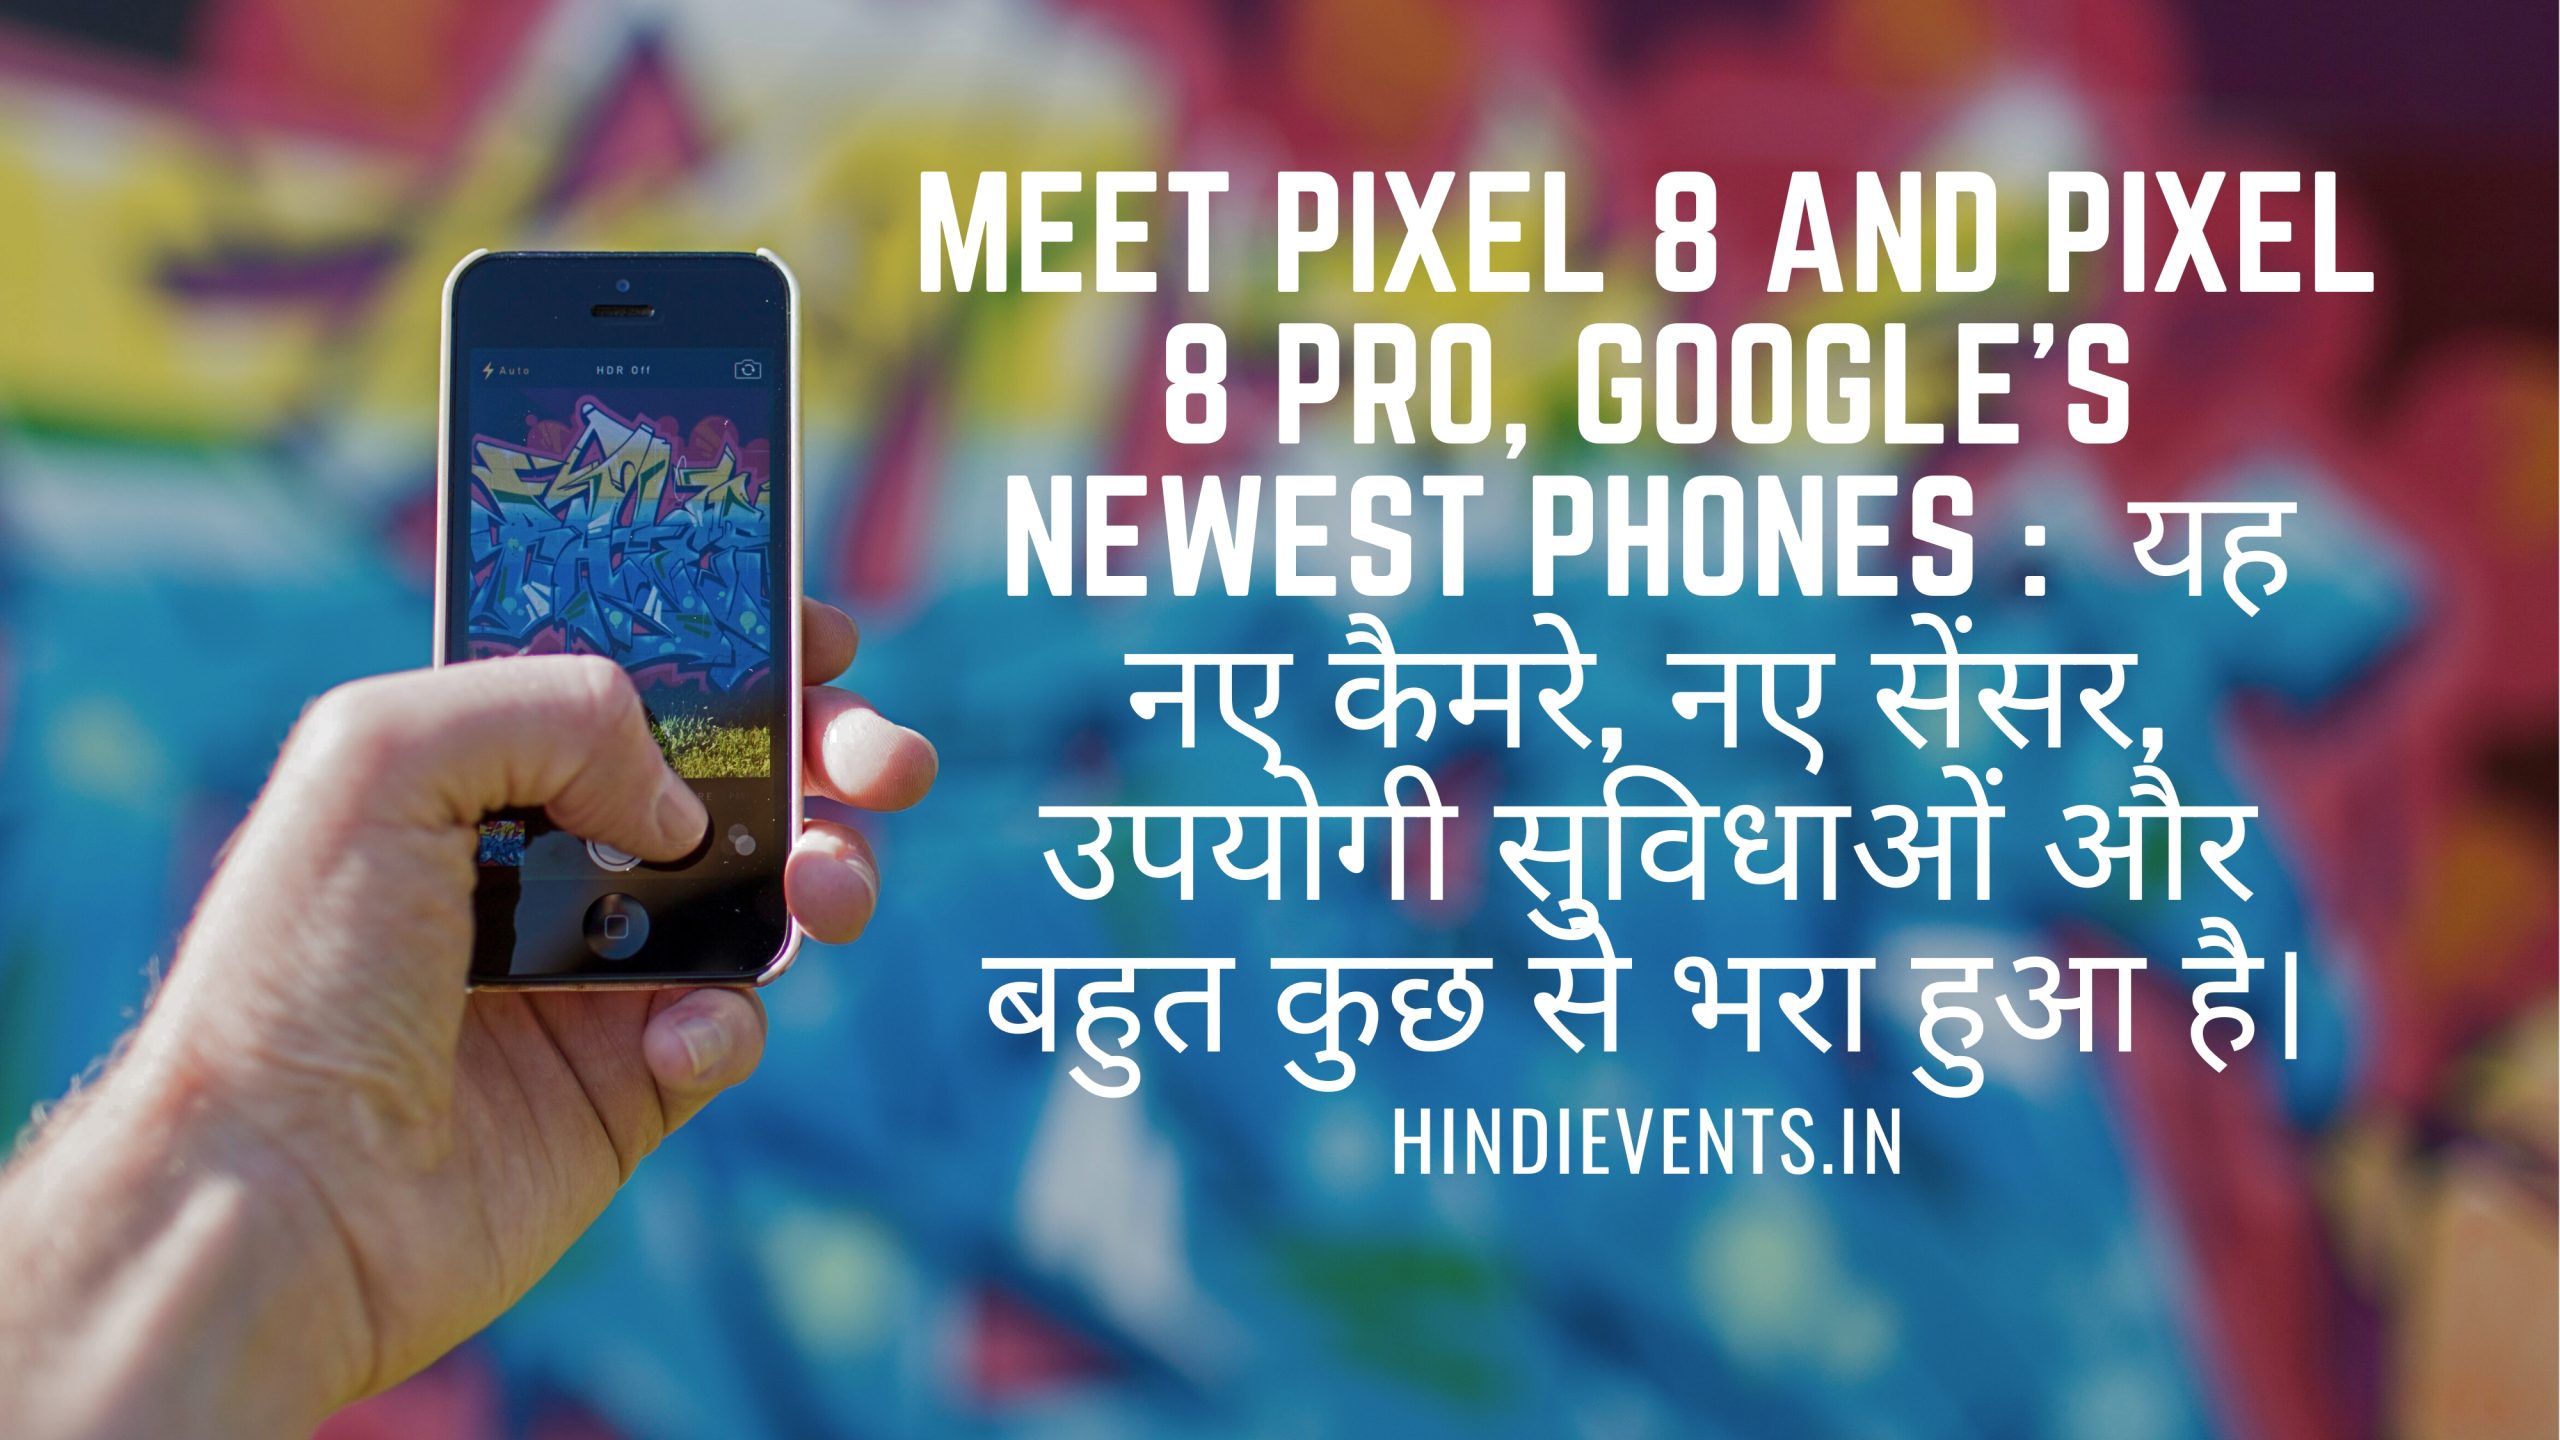 Meet Pixel 8 and Pixel 8 Pro, google's newest phones : यह नए कैमरे, नए सेंसर, उपयोगी सुविधाओं और बहुत कुछ से भरा हुआ है।